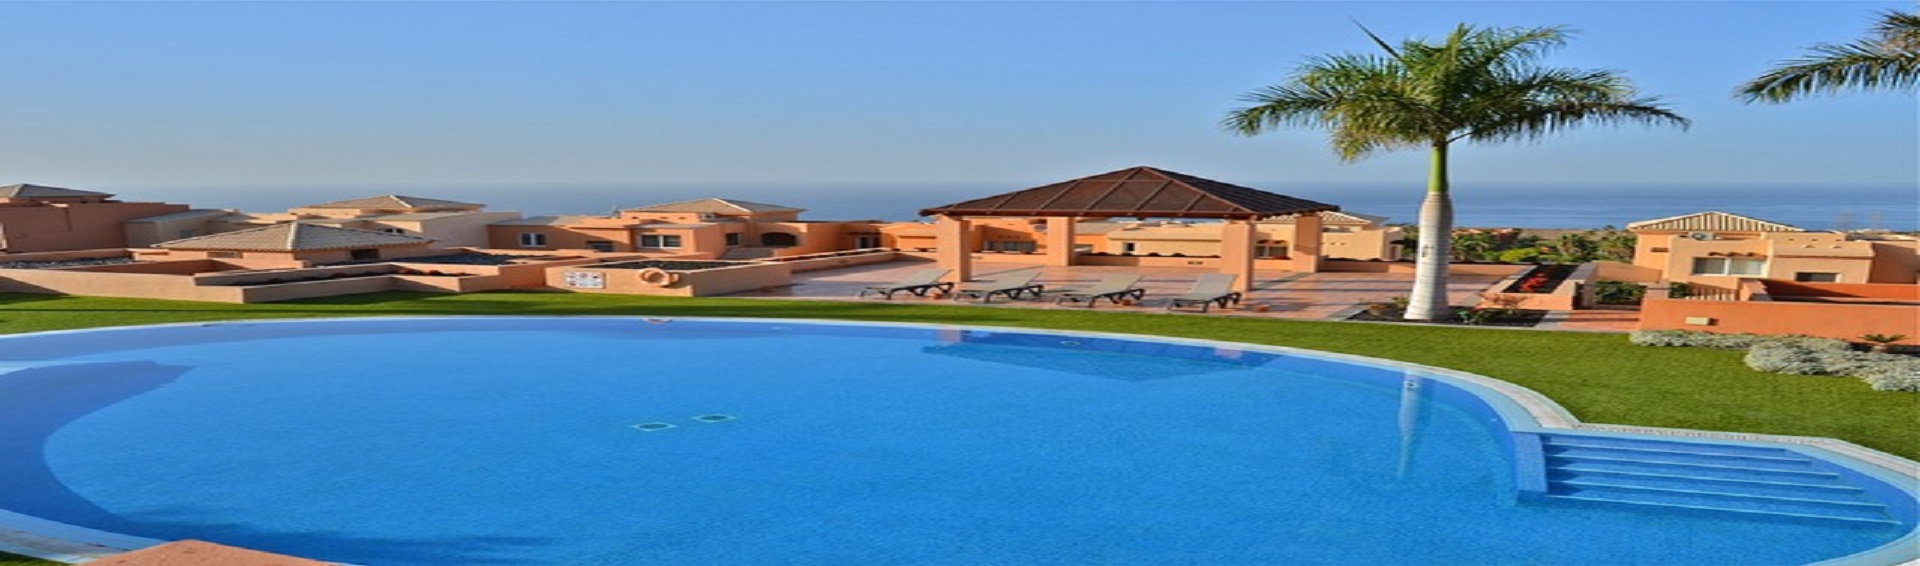 Вилла в шикарном комплексе из 28 вилл класса люкс в Sunset Golf Village, Costa Adeje